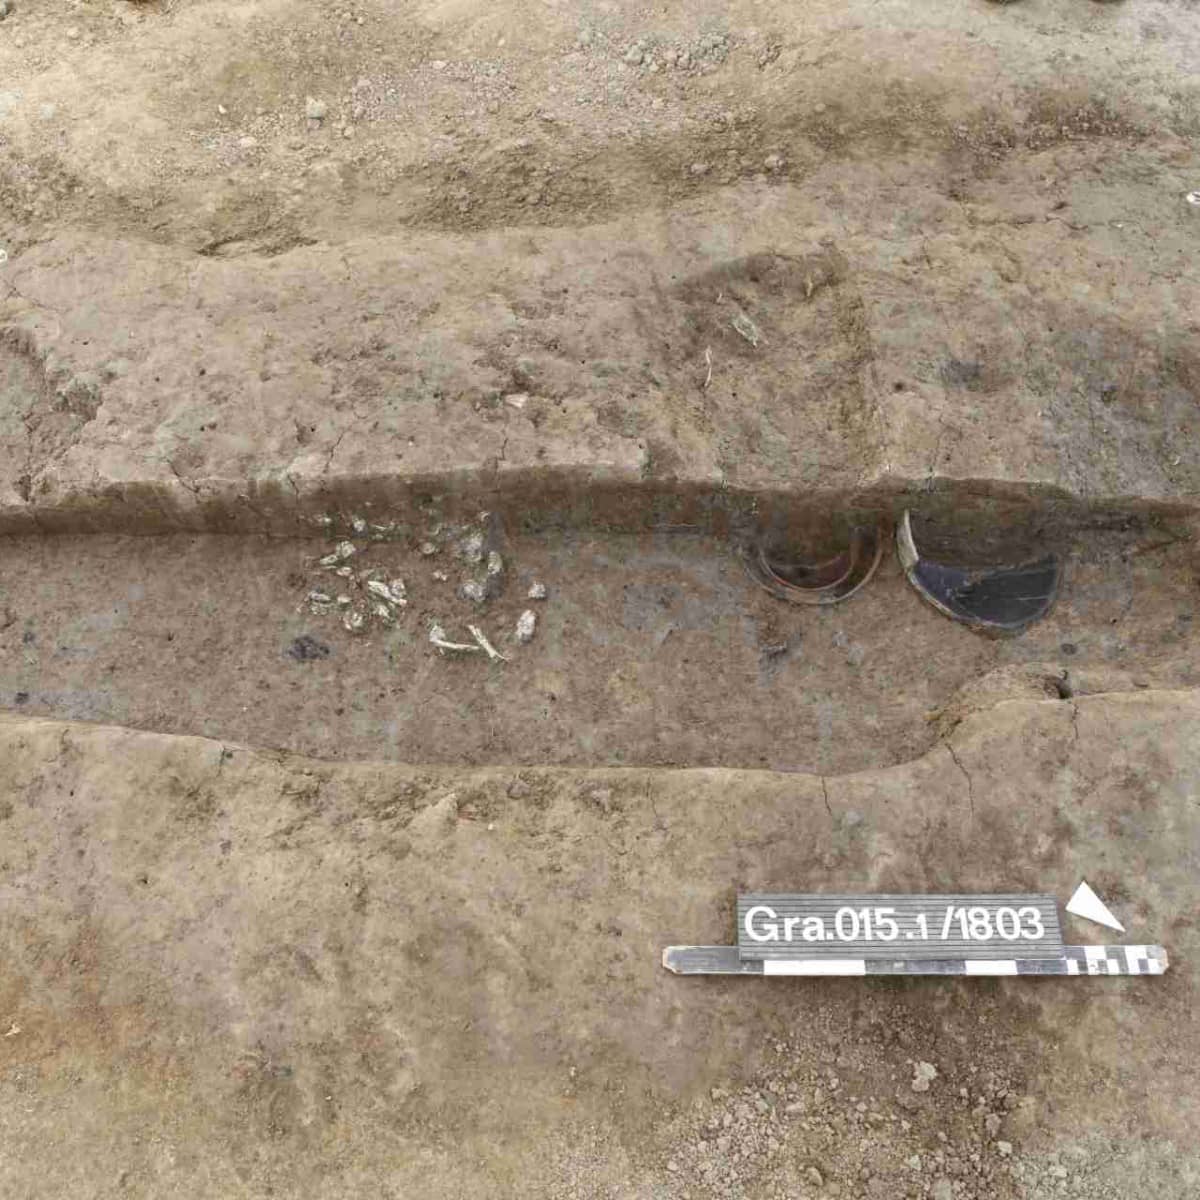 Freigelegte Grabgrube mit Knochen und Beigabengefässen.